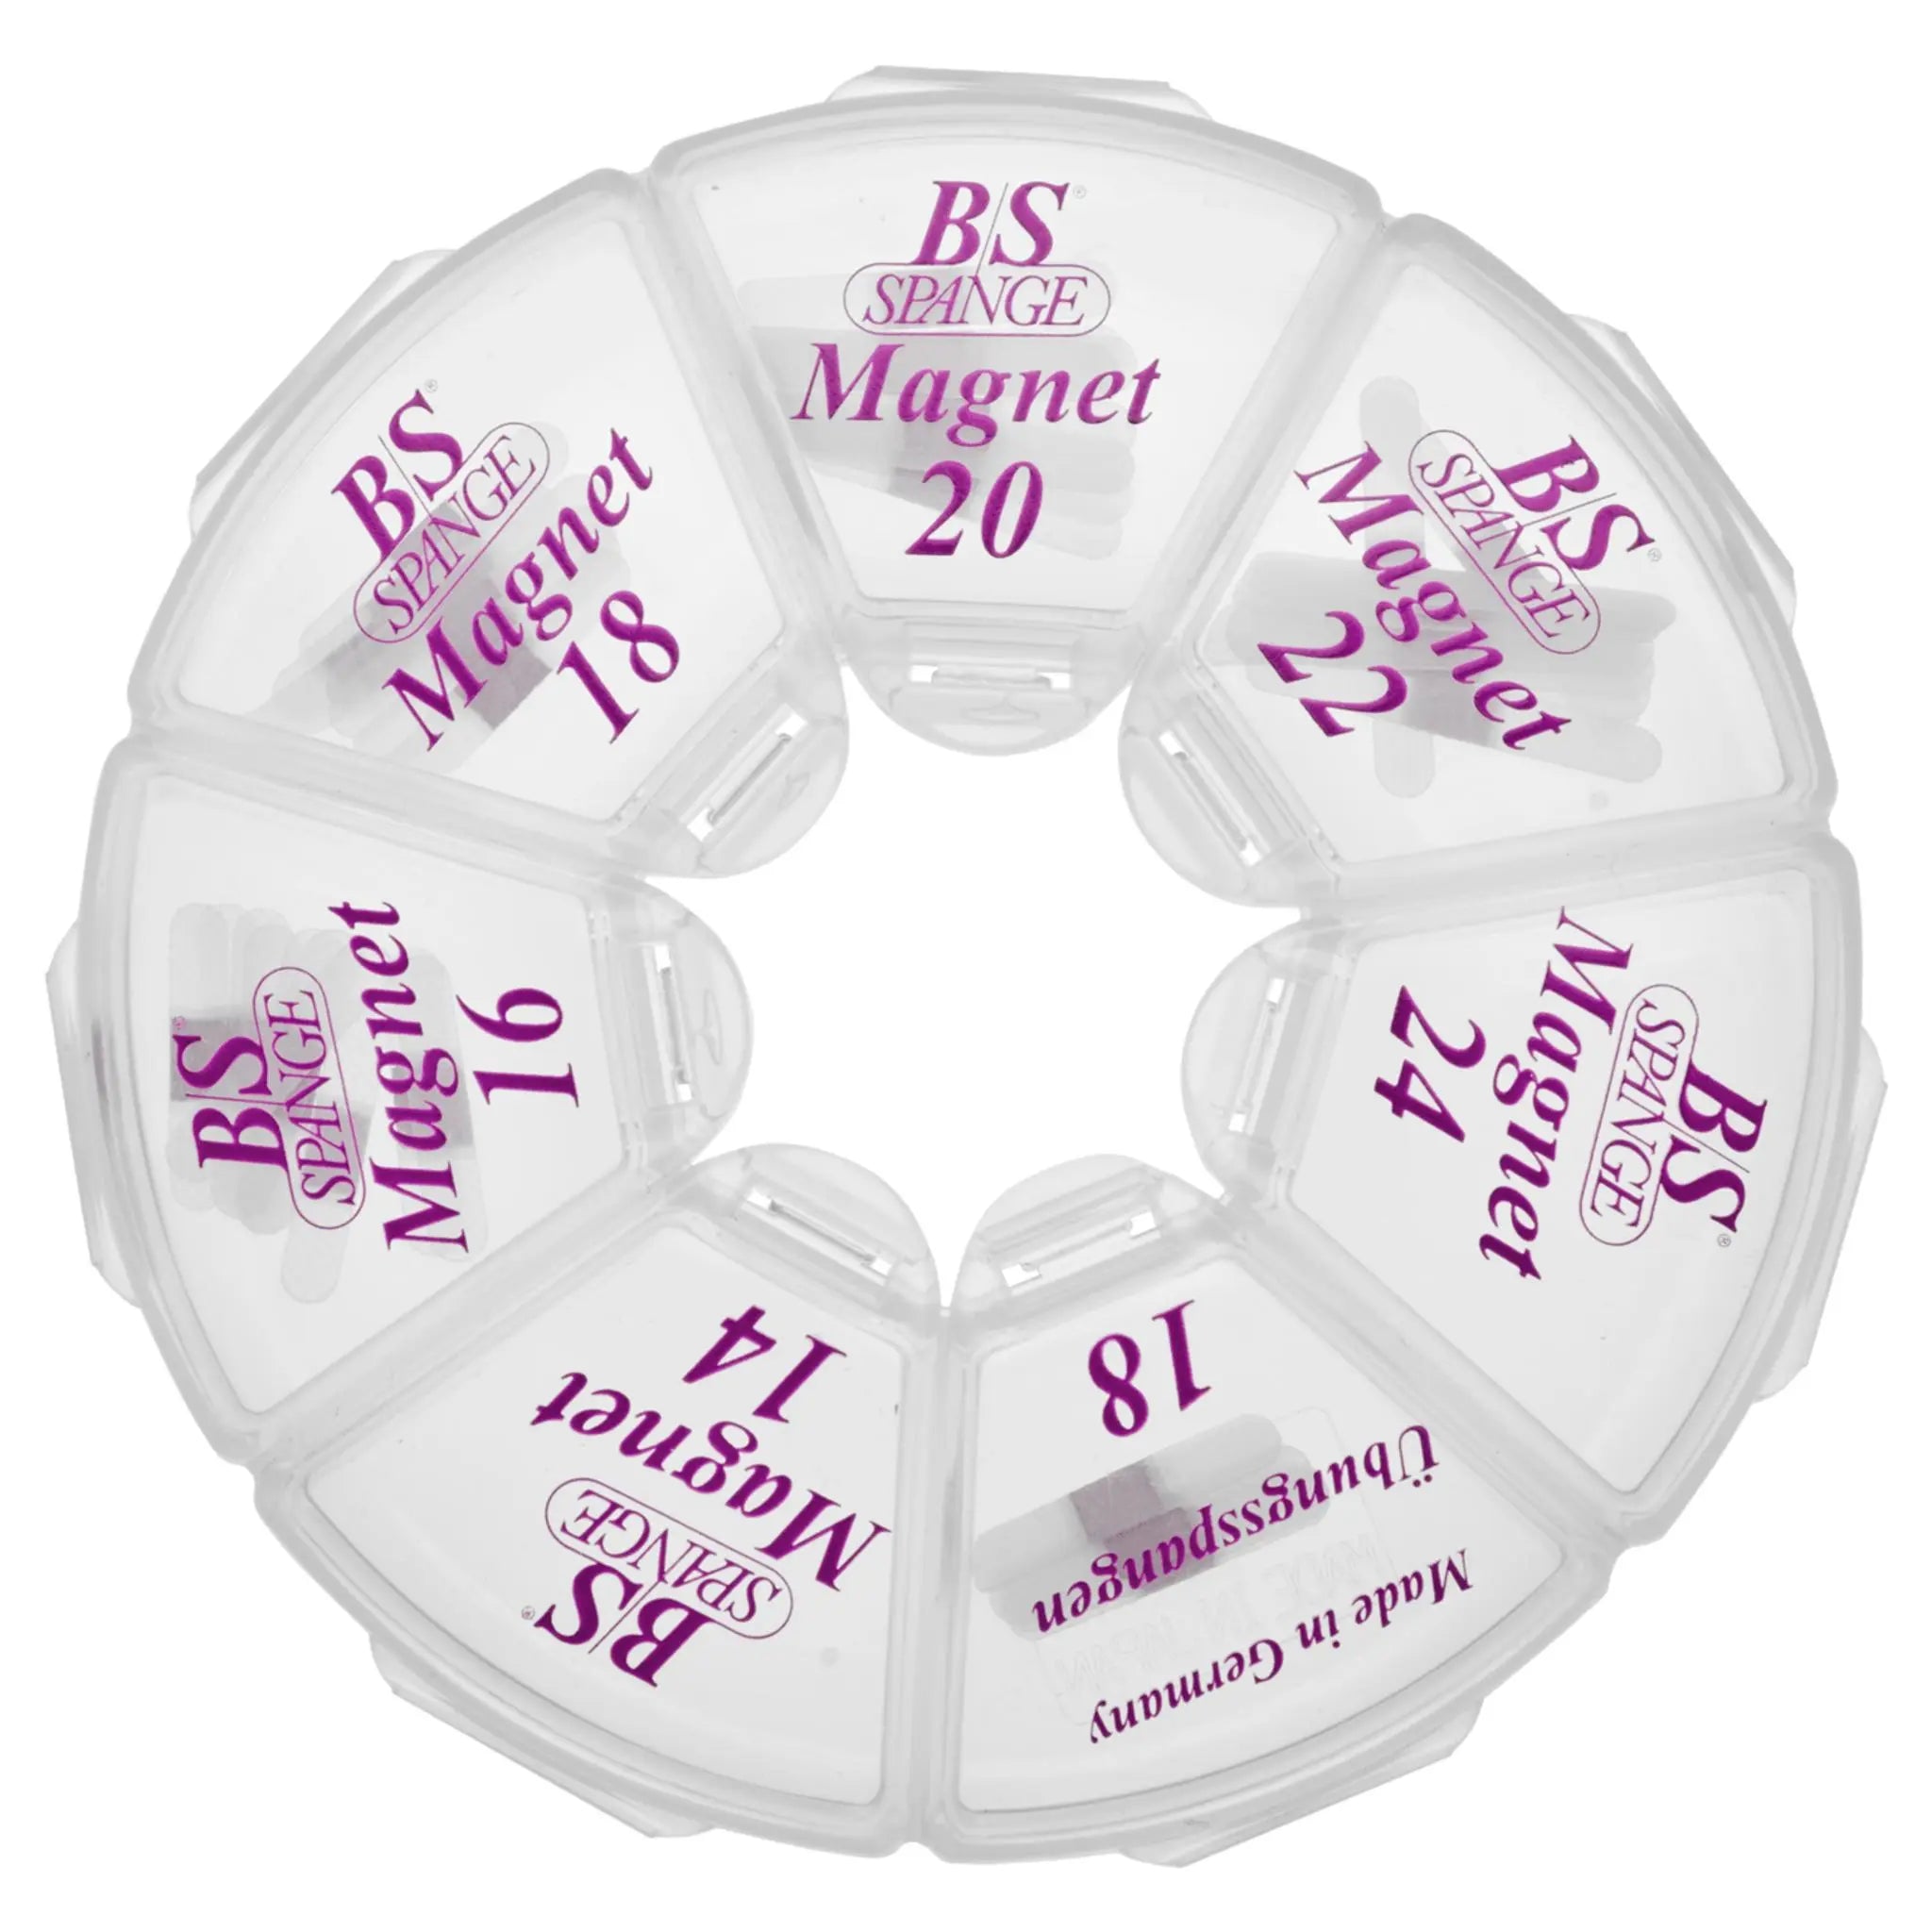 Kit de languettes Magnets B/S x40 B/S Spange